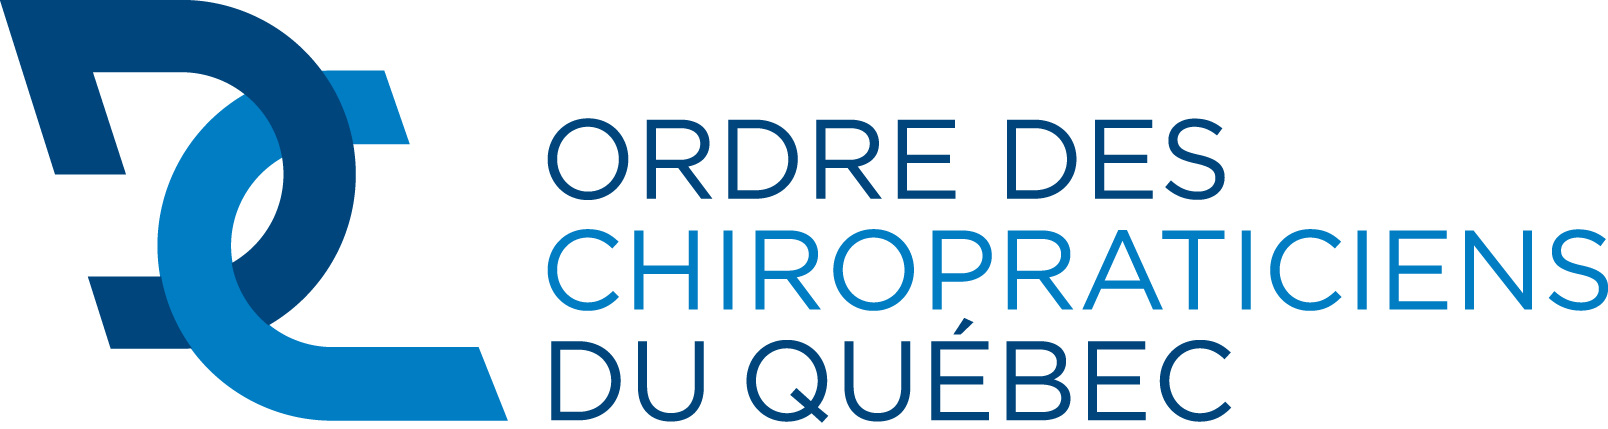 Membres de l'ordre de chiropraticiens du Québec